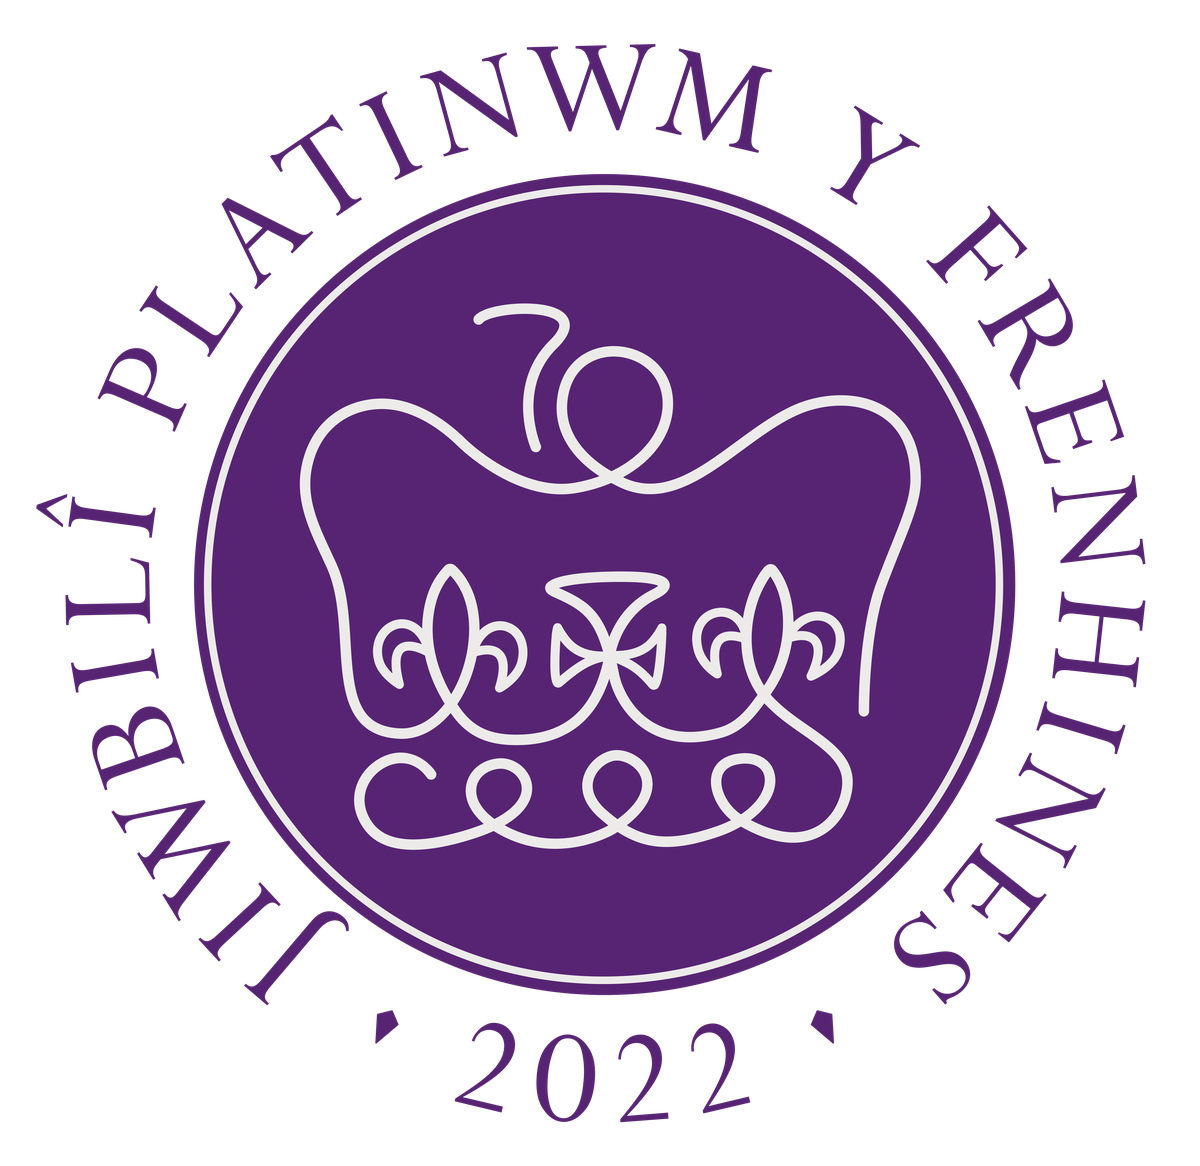 Jubilee logo in purple